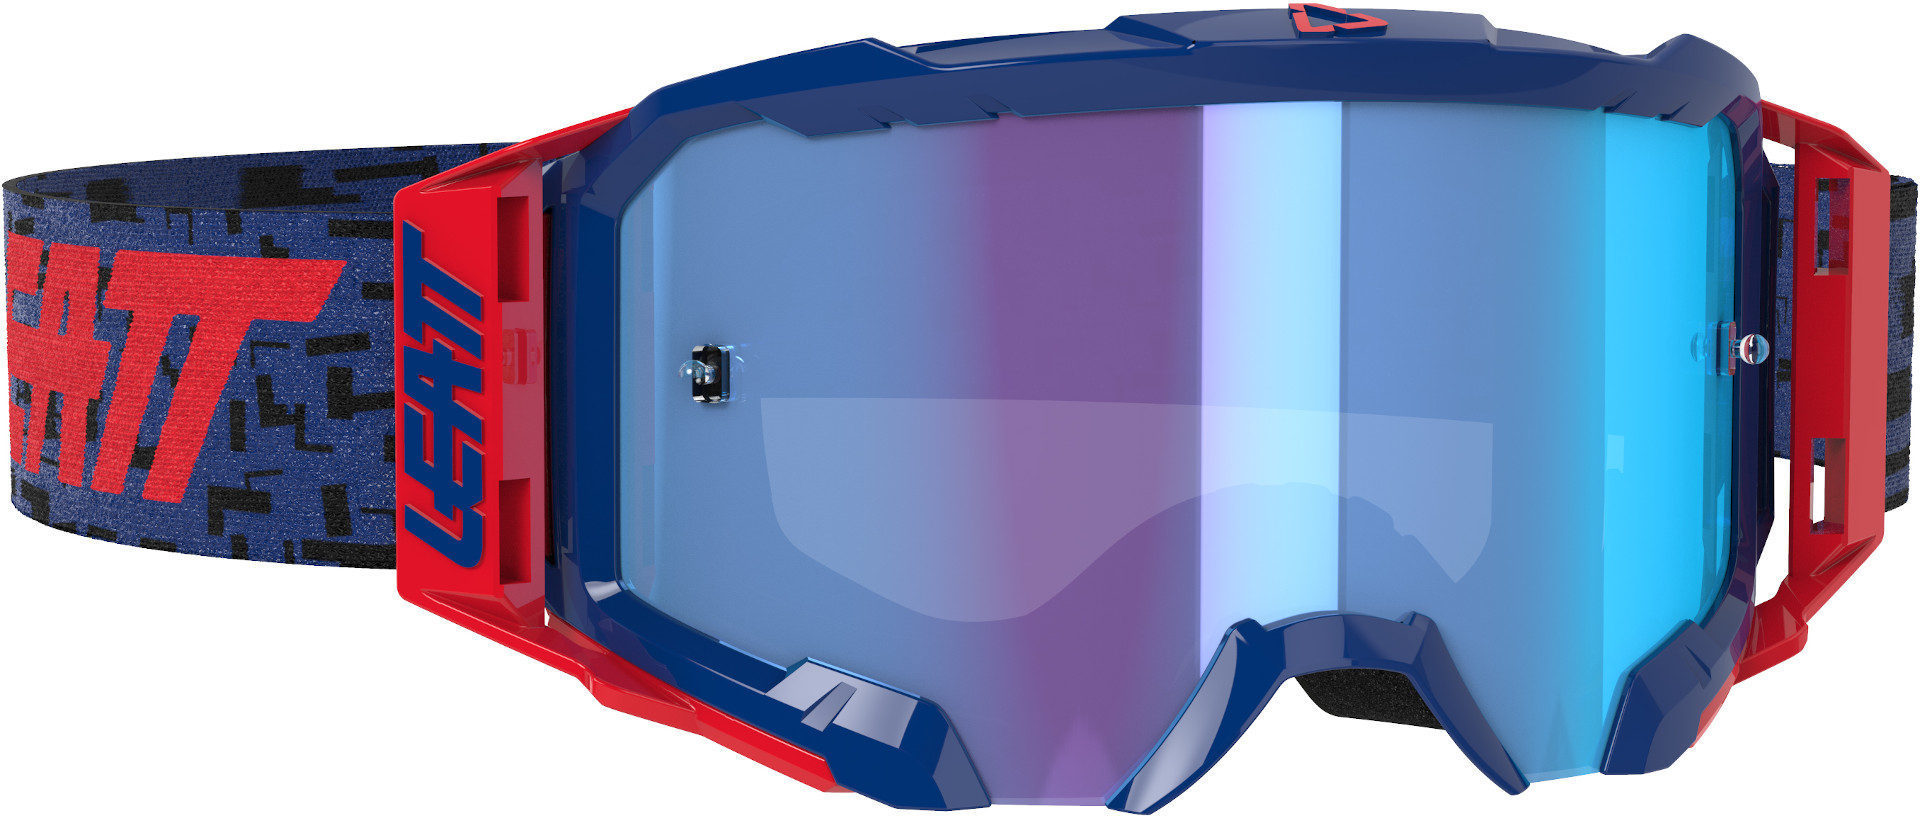 Очки Leatt Velocity 5.5 Iriz Мотокросс, сине-красные